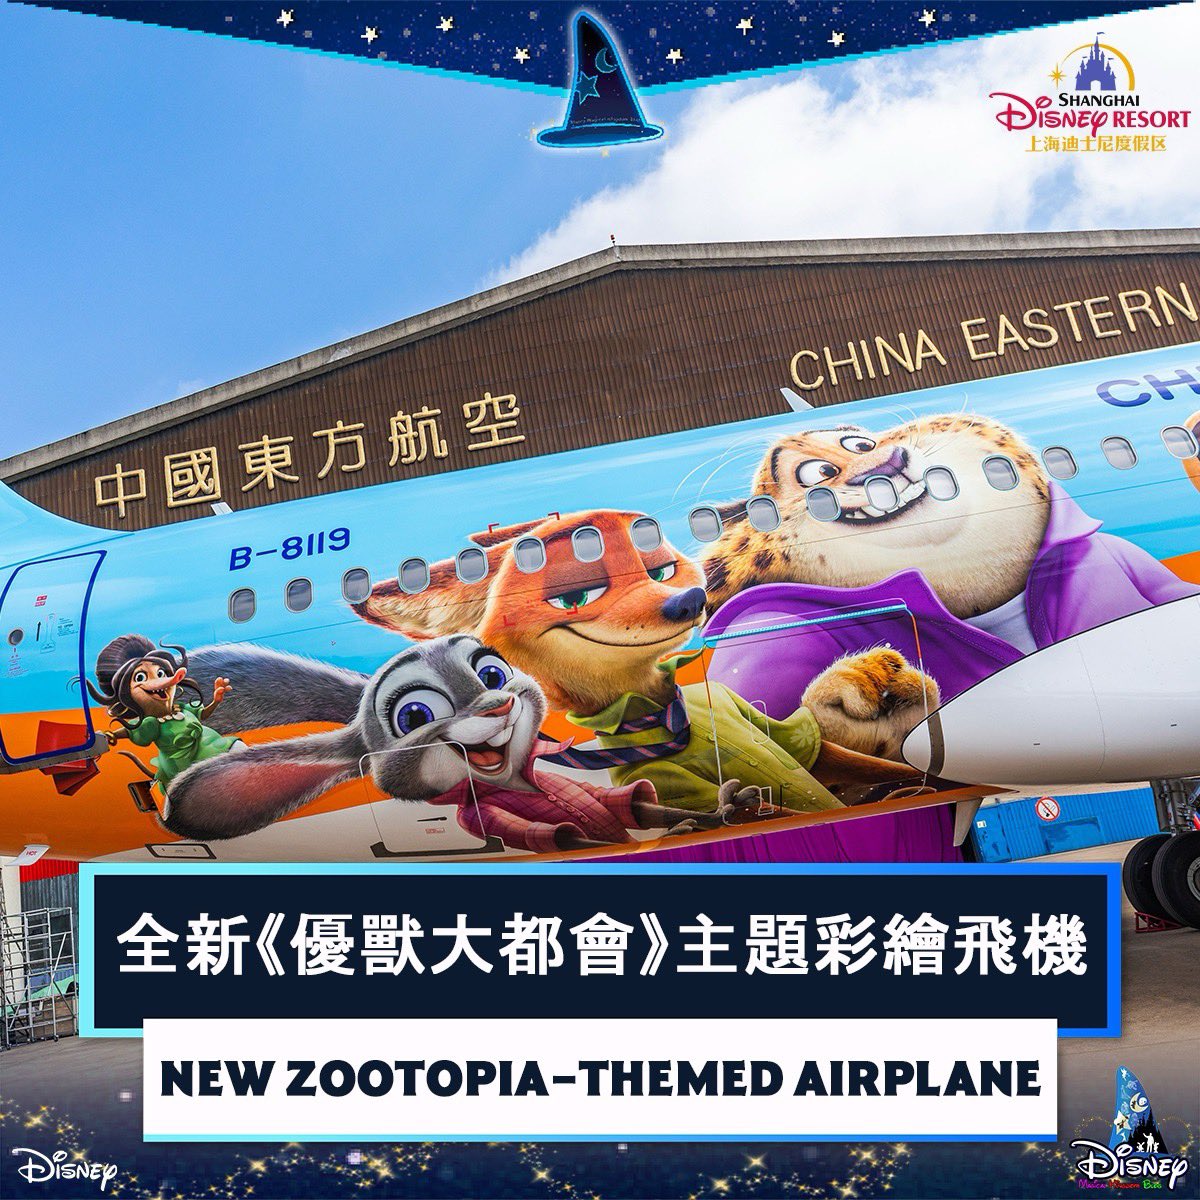 #上海迪士尼度假區 攜手 #中國東方航空 推全新《#優獸大都會》主題彩繪飛機 #ShanghaiDisneyResort and #ChinaEasternAirlines Launch New #Zootopia-Themed Airplane ✈️ 知多啲（Magic in details）： disney-magical-kingdom-blog.com/2024/05/Shangh… #Disney #迪士尼 #ディズニー #DisneyFriends #上海迪士尼